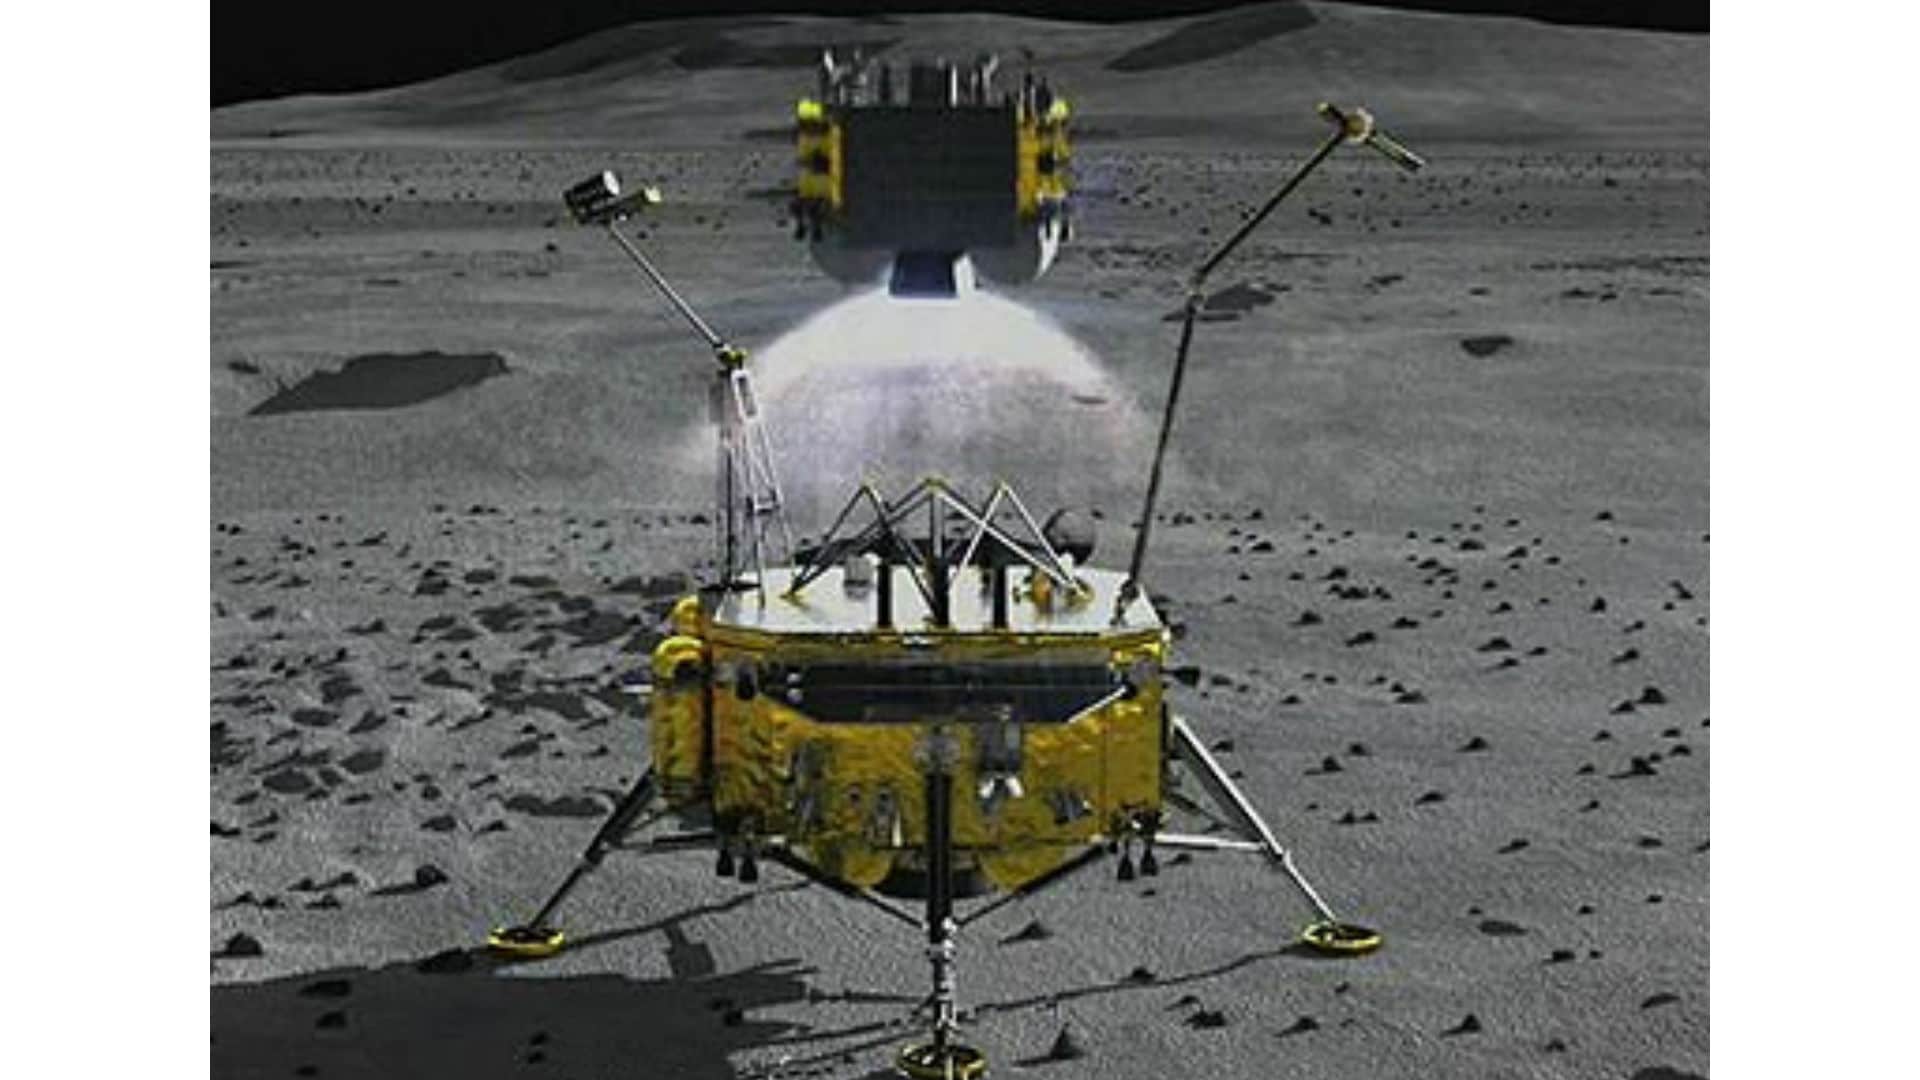 El 3 de diciembre, el módulo de ascenso de la sonda Chang'e 5 despegó de la Luna, realizando el primer lanzamiento orbital fuera de la Tierra desde 1976. A bordo iban algunos kilogramos de muestras lunares. [CNSA]